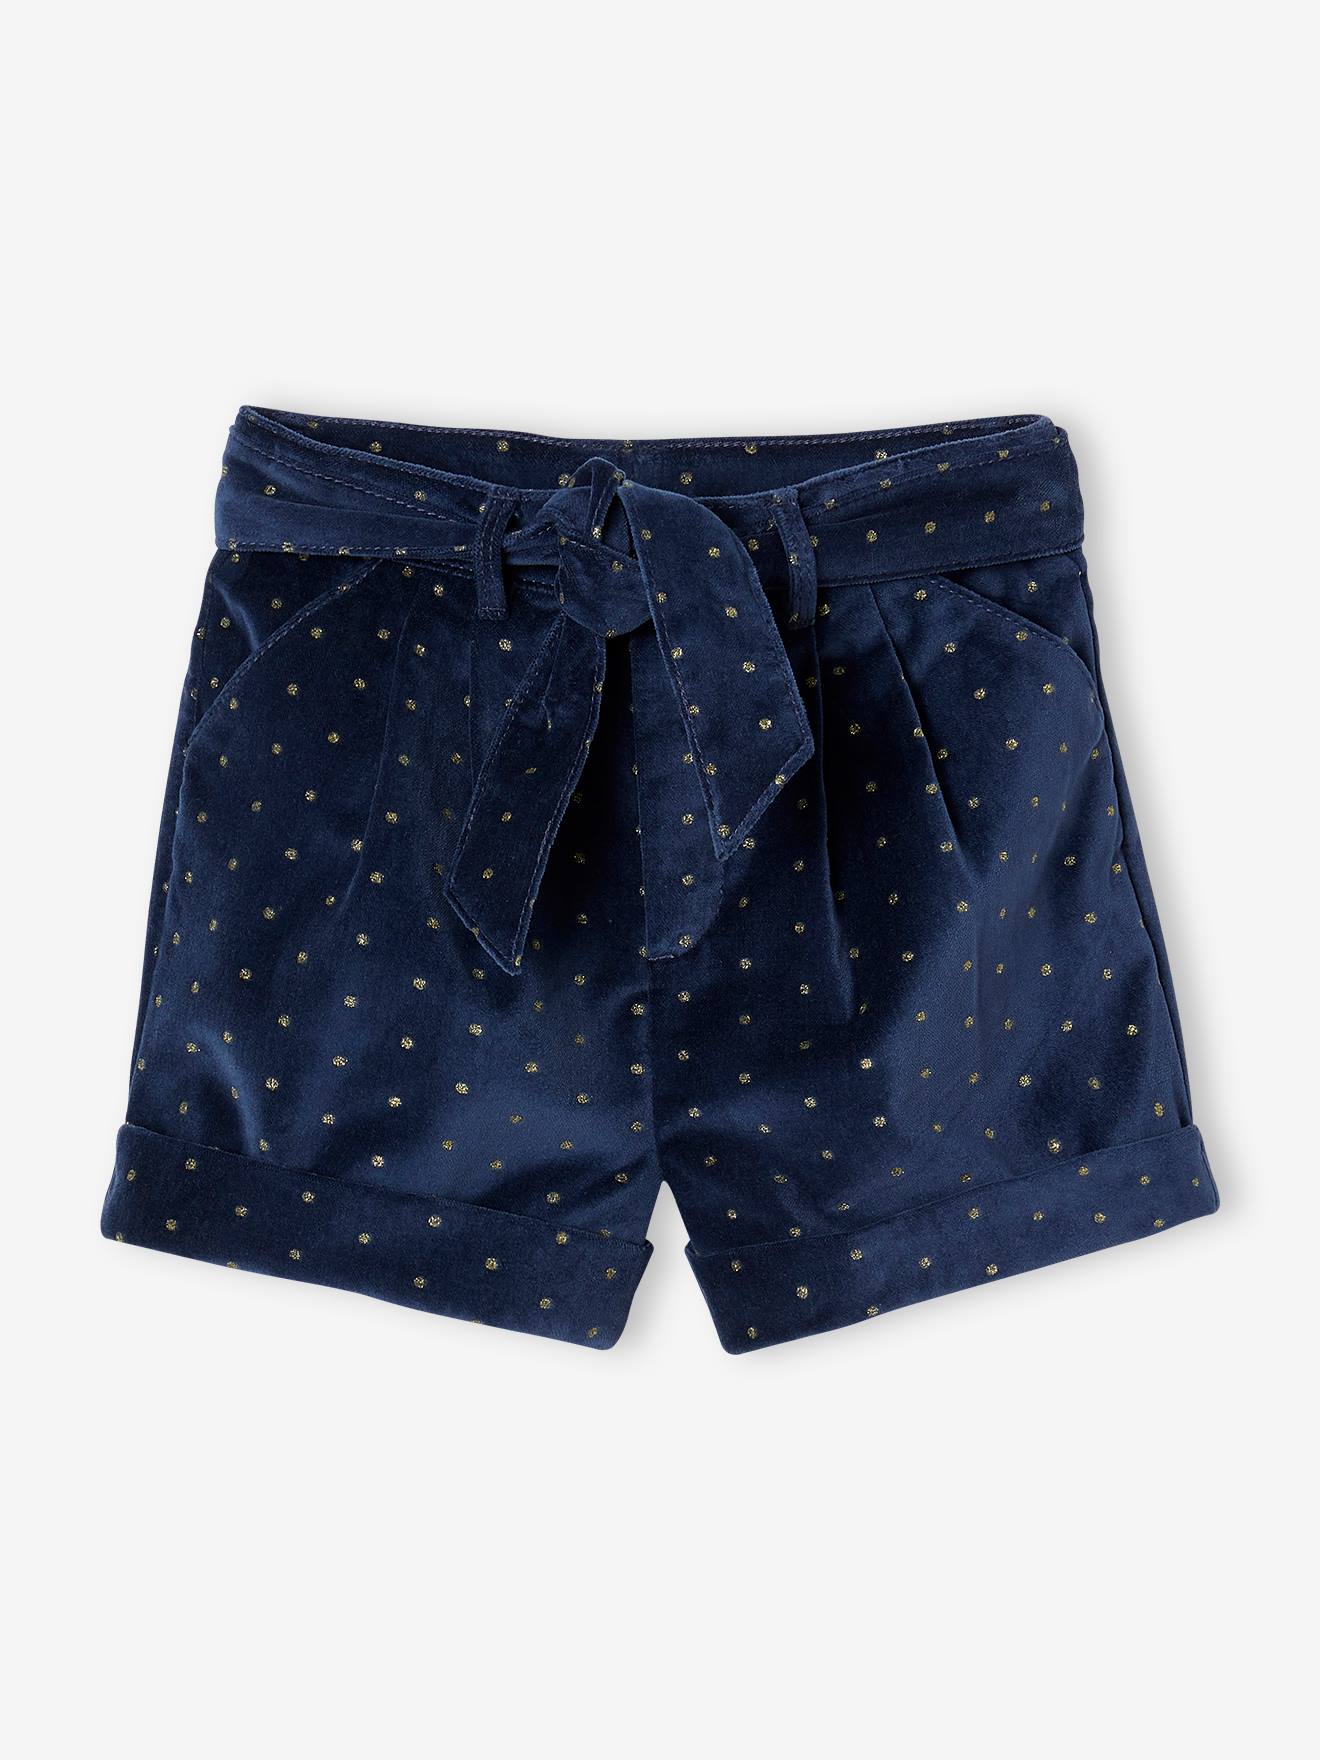 Fancy Shorts in Plain Velour, for Girls navy blue